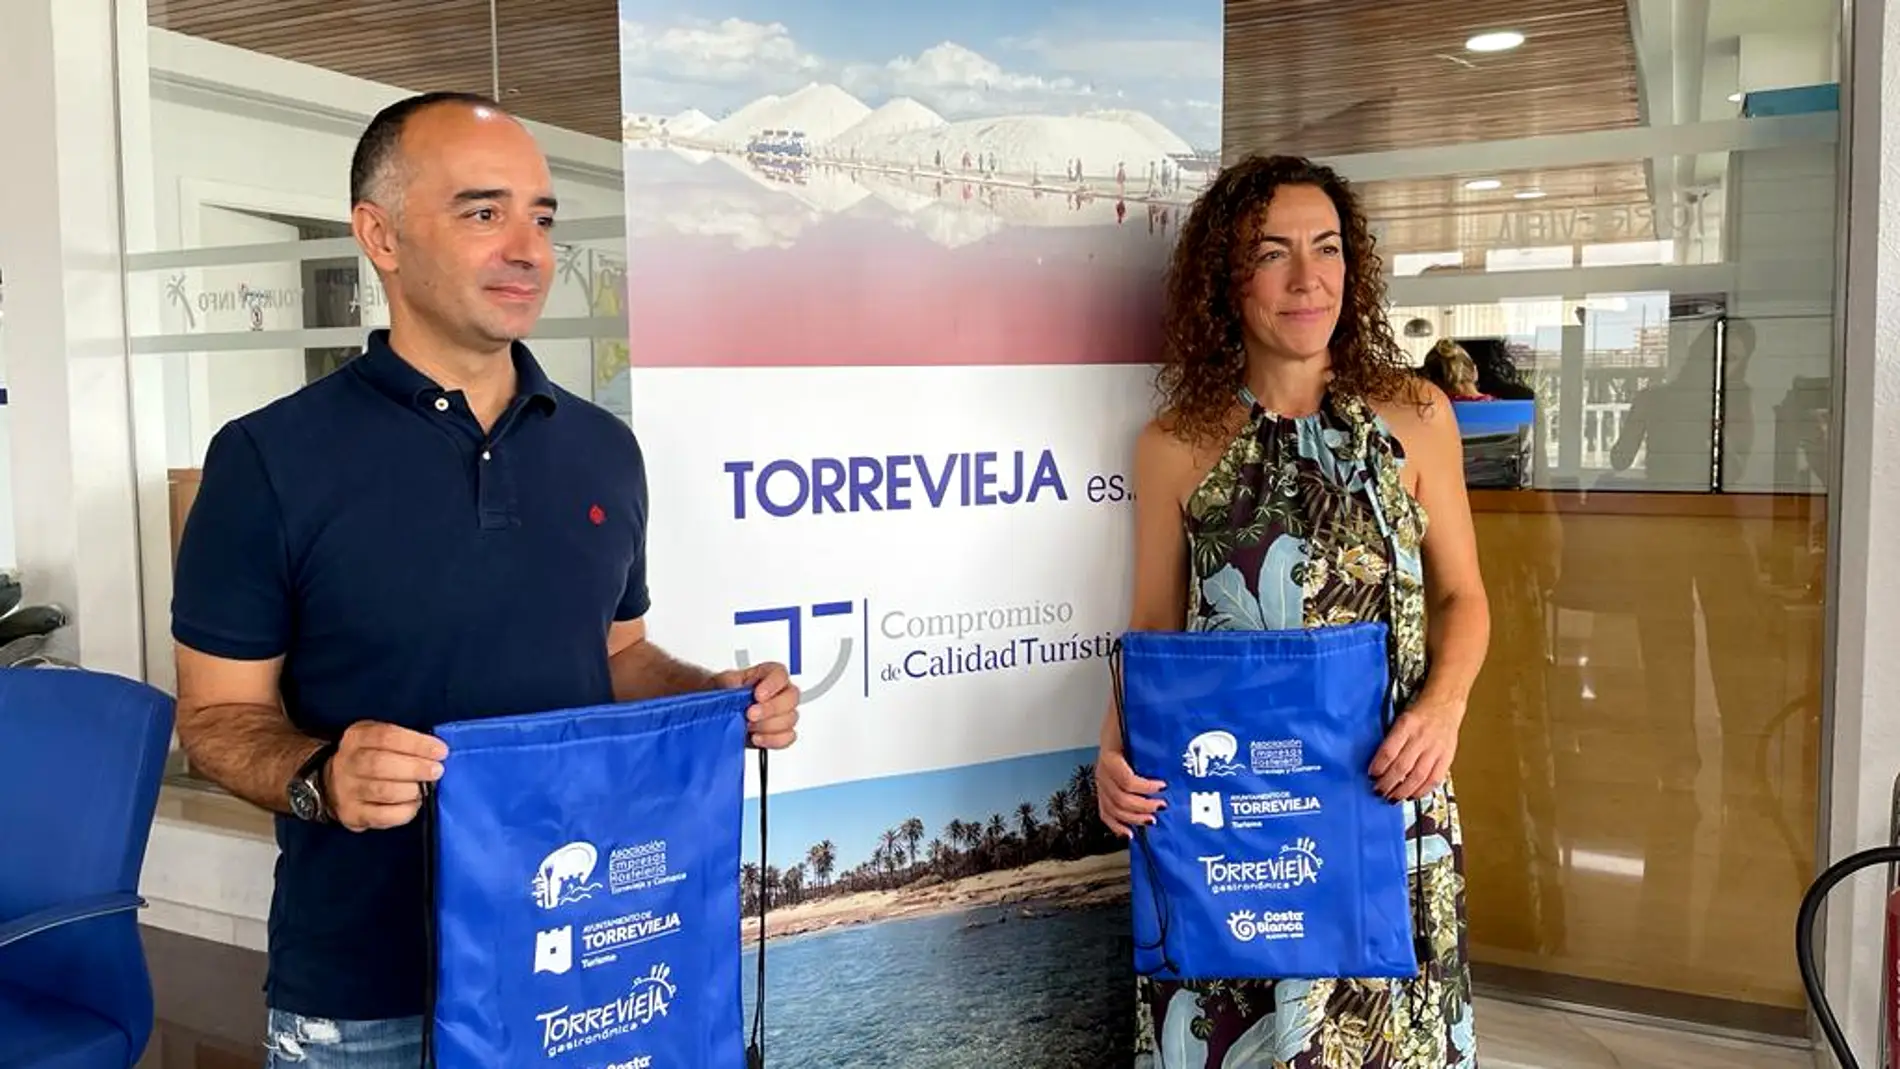 Torrevieja participará en "Alicante Gastronómica" del 23 al 26 septiembre en Ifa   